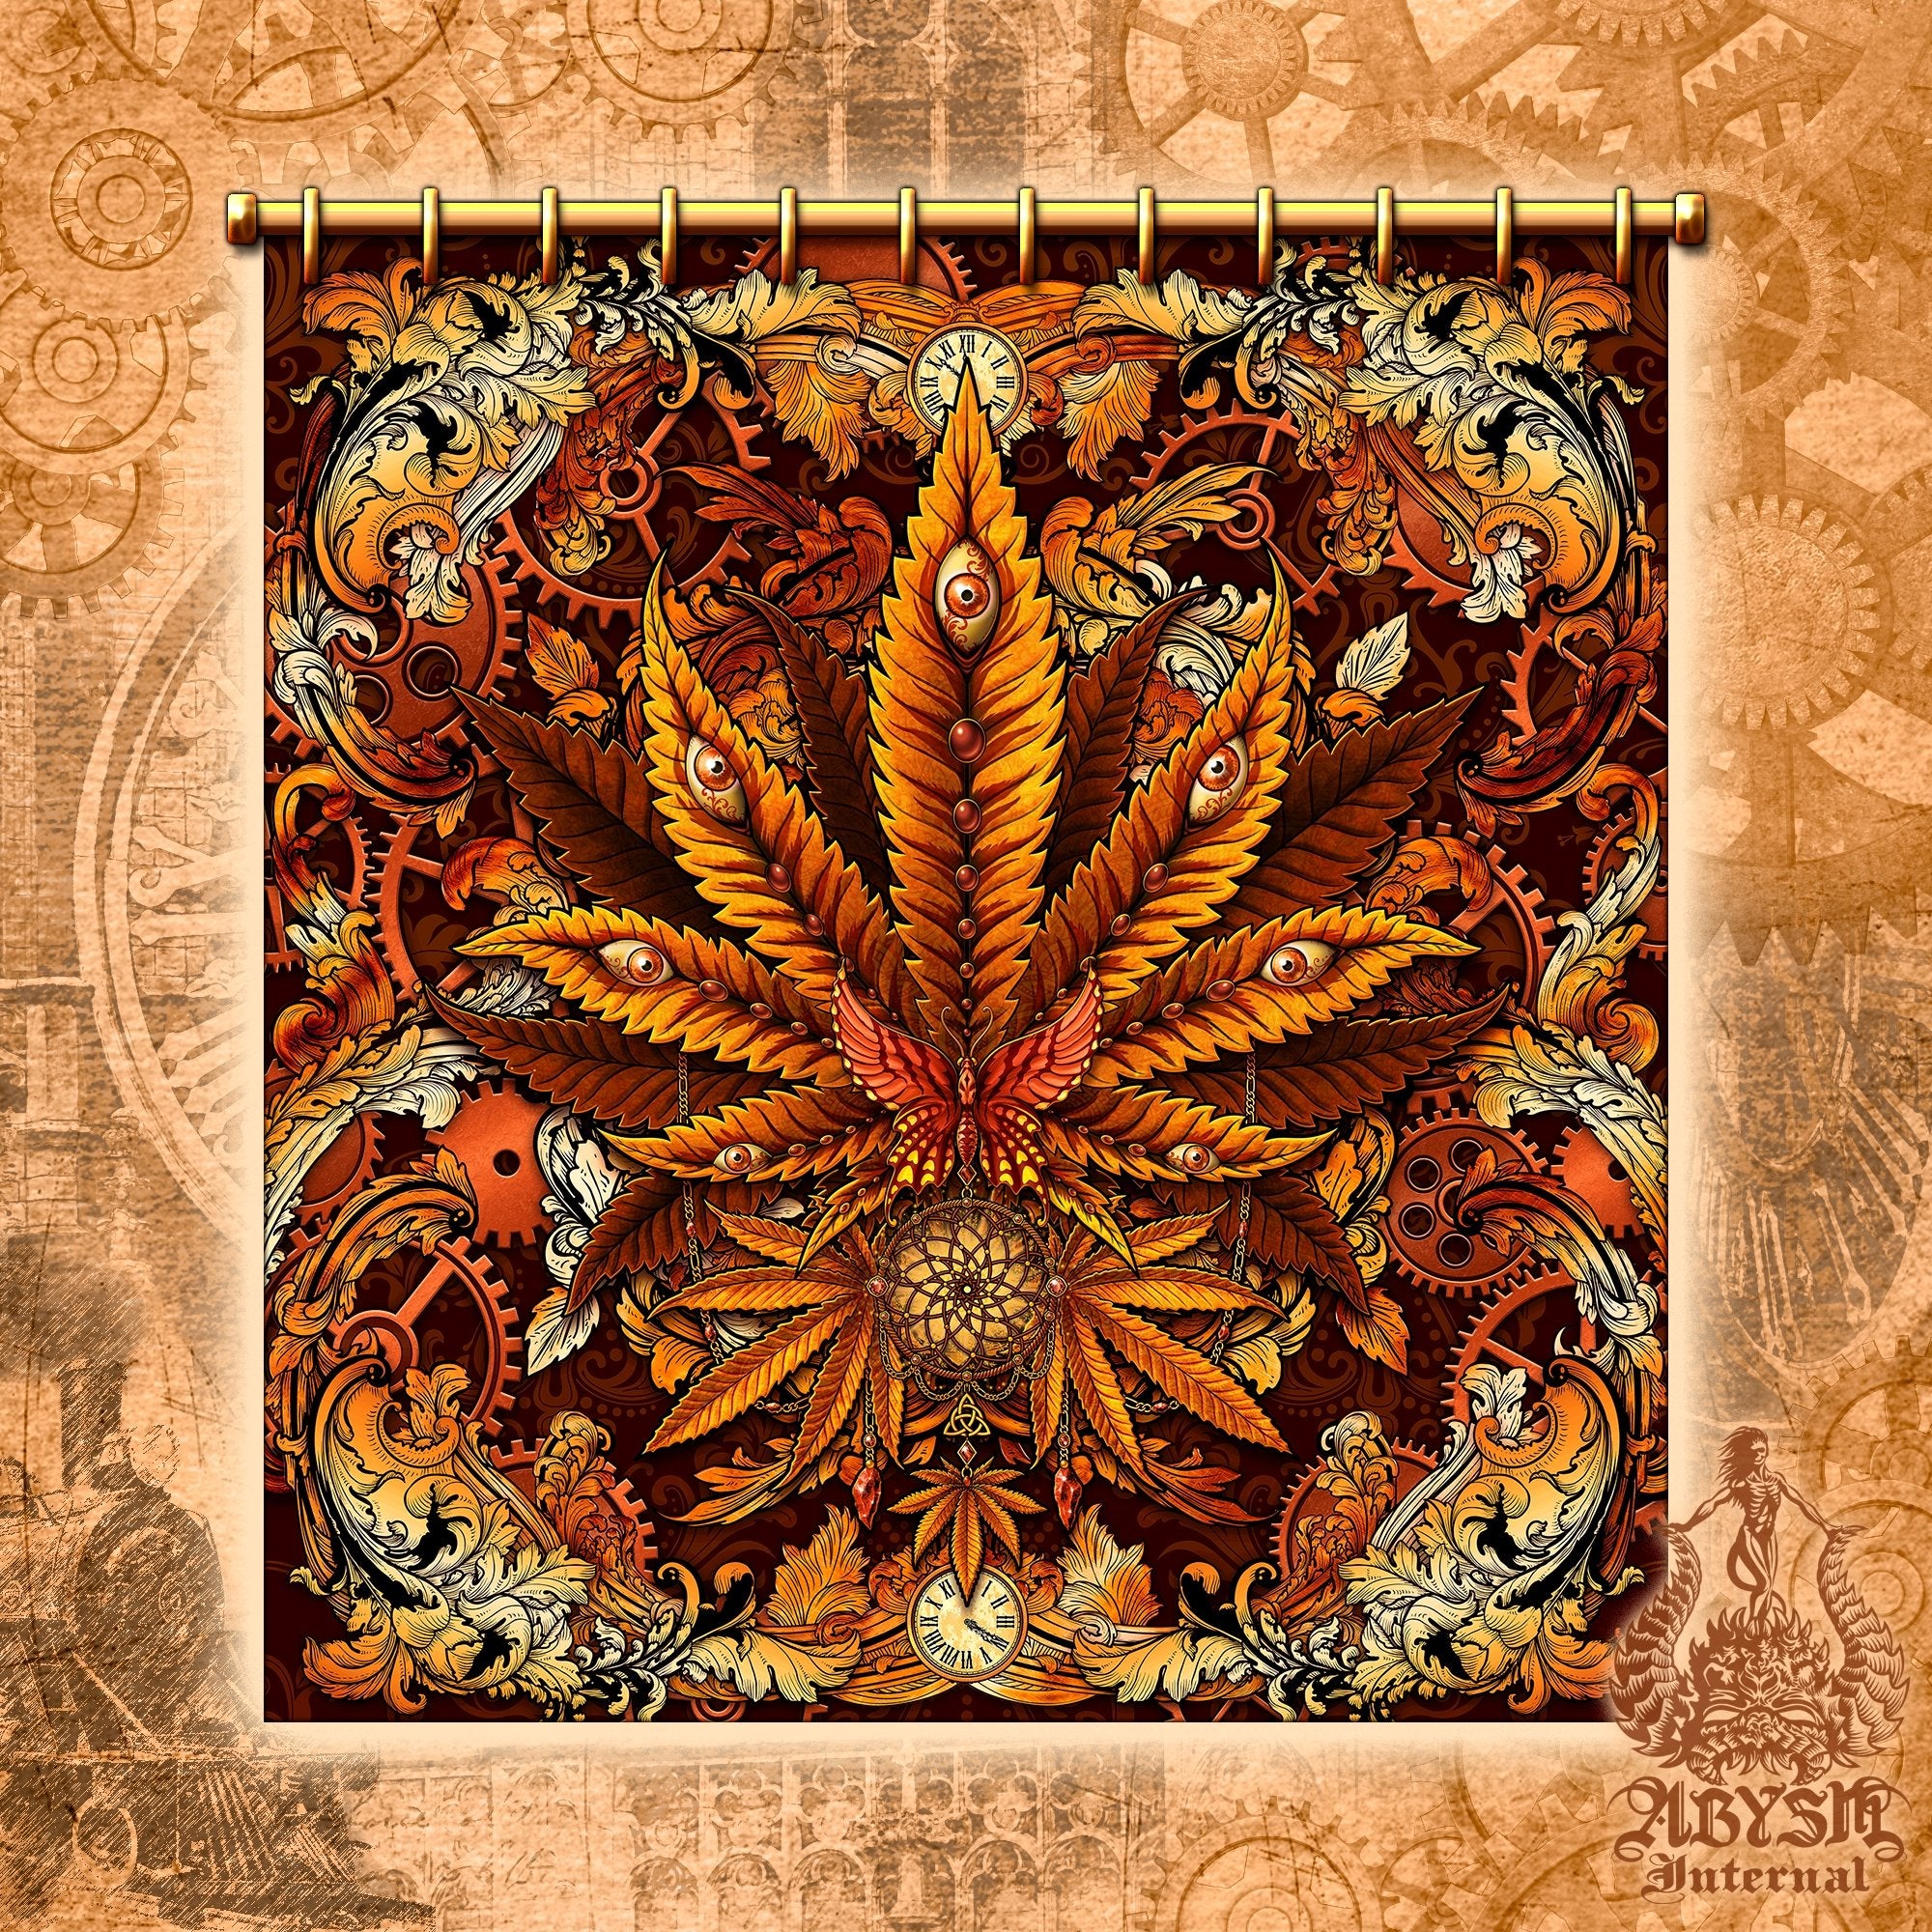 Weed Shower Curtain, Hippie Bathroom Decor, Indie Cannabis Print, 420 Home Art - Marijuana, Steampunk - Abysm Internal